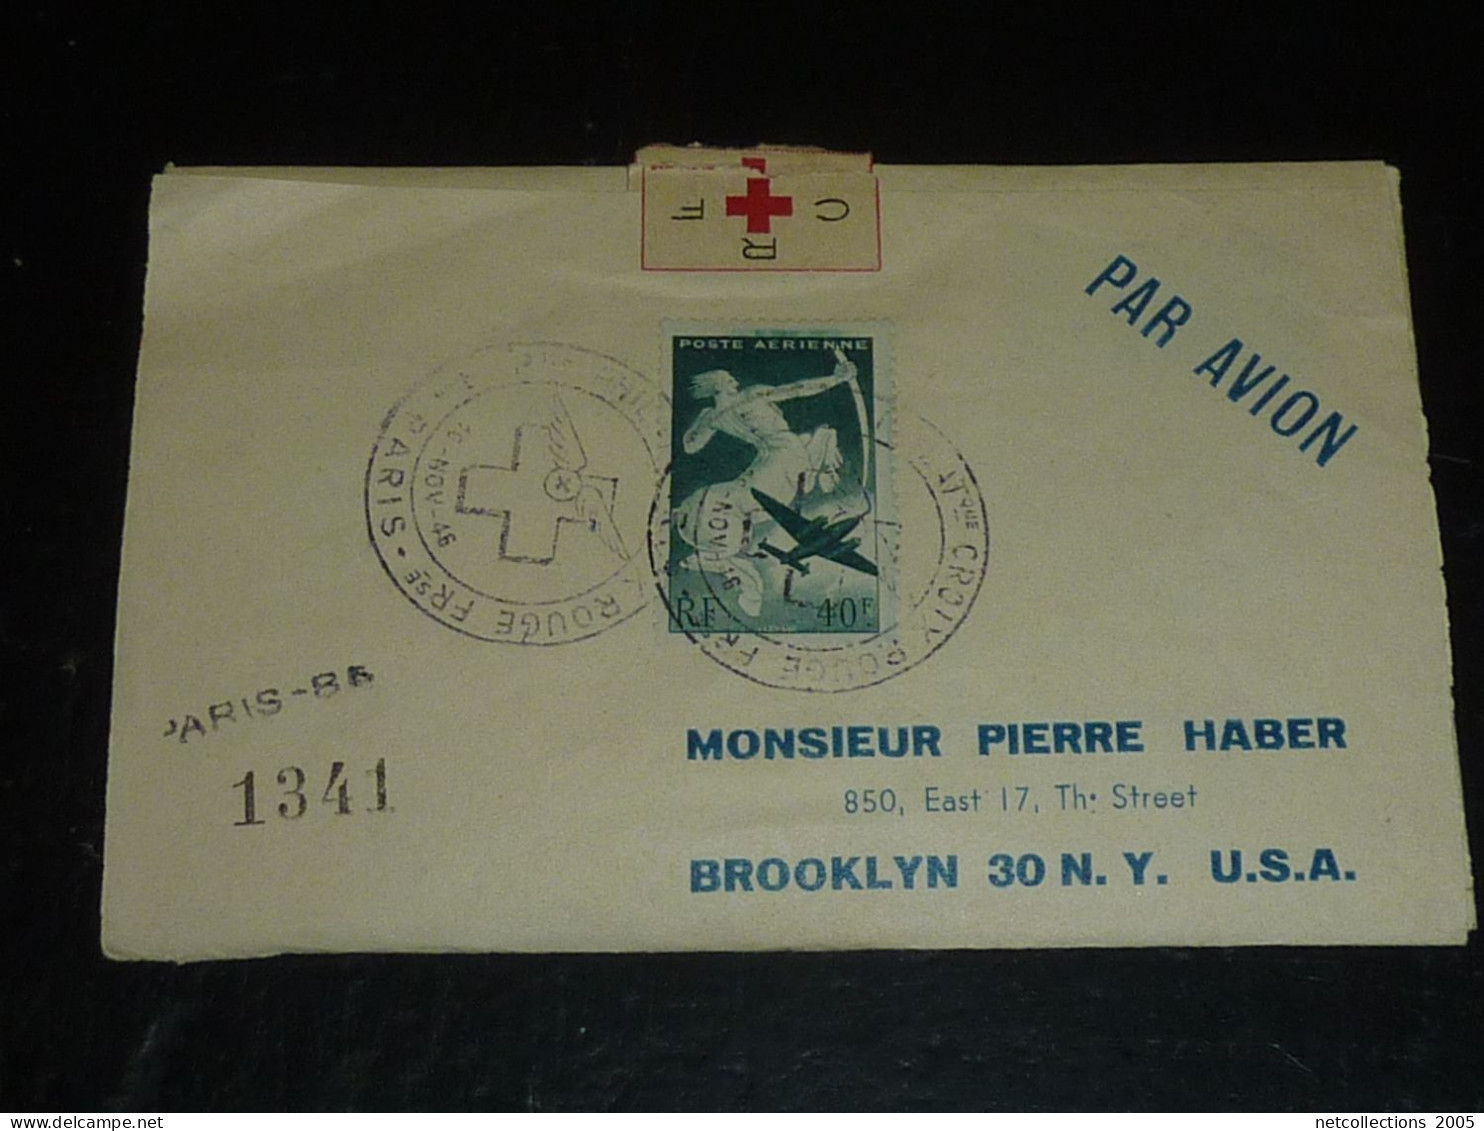 TOUR DU MONDE; CROIX ROUGE - PARIS NEW-YORK 18/11/1946 AU 21/11/1946 - NEW-YORK BRUXELLES - BRUXELLES PARIS ARRIVEE (CB) - Red Cross